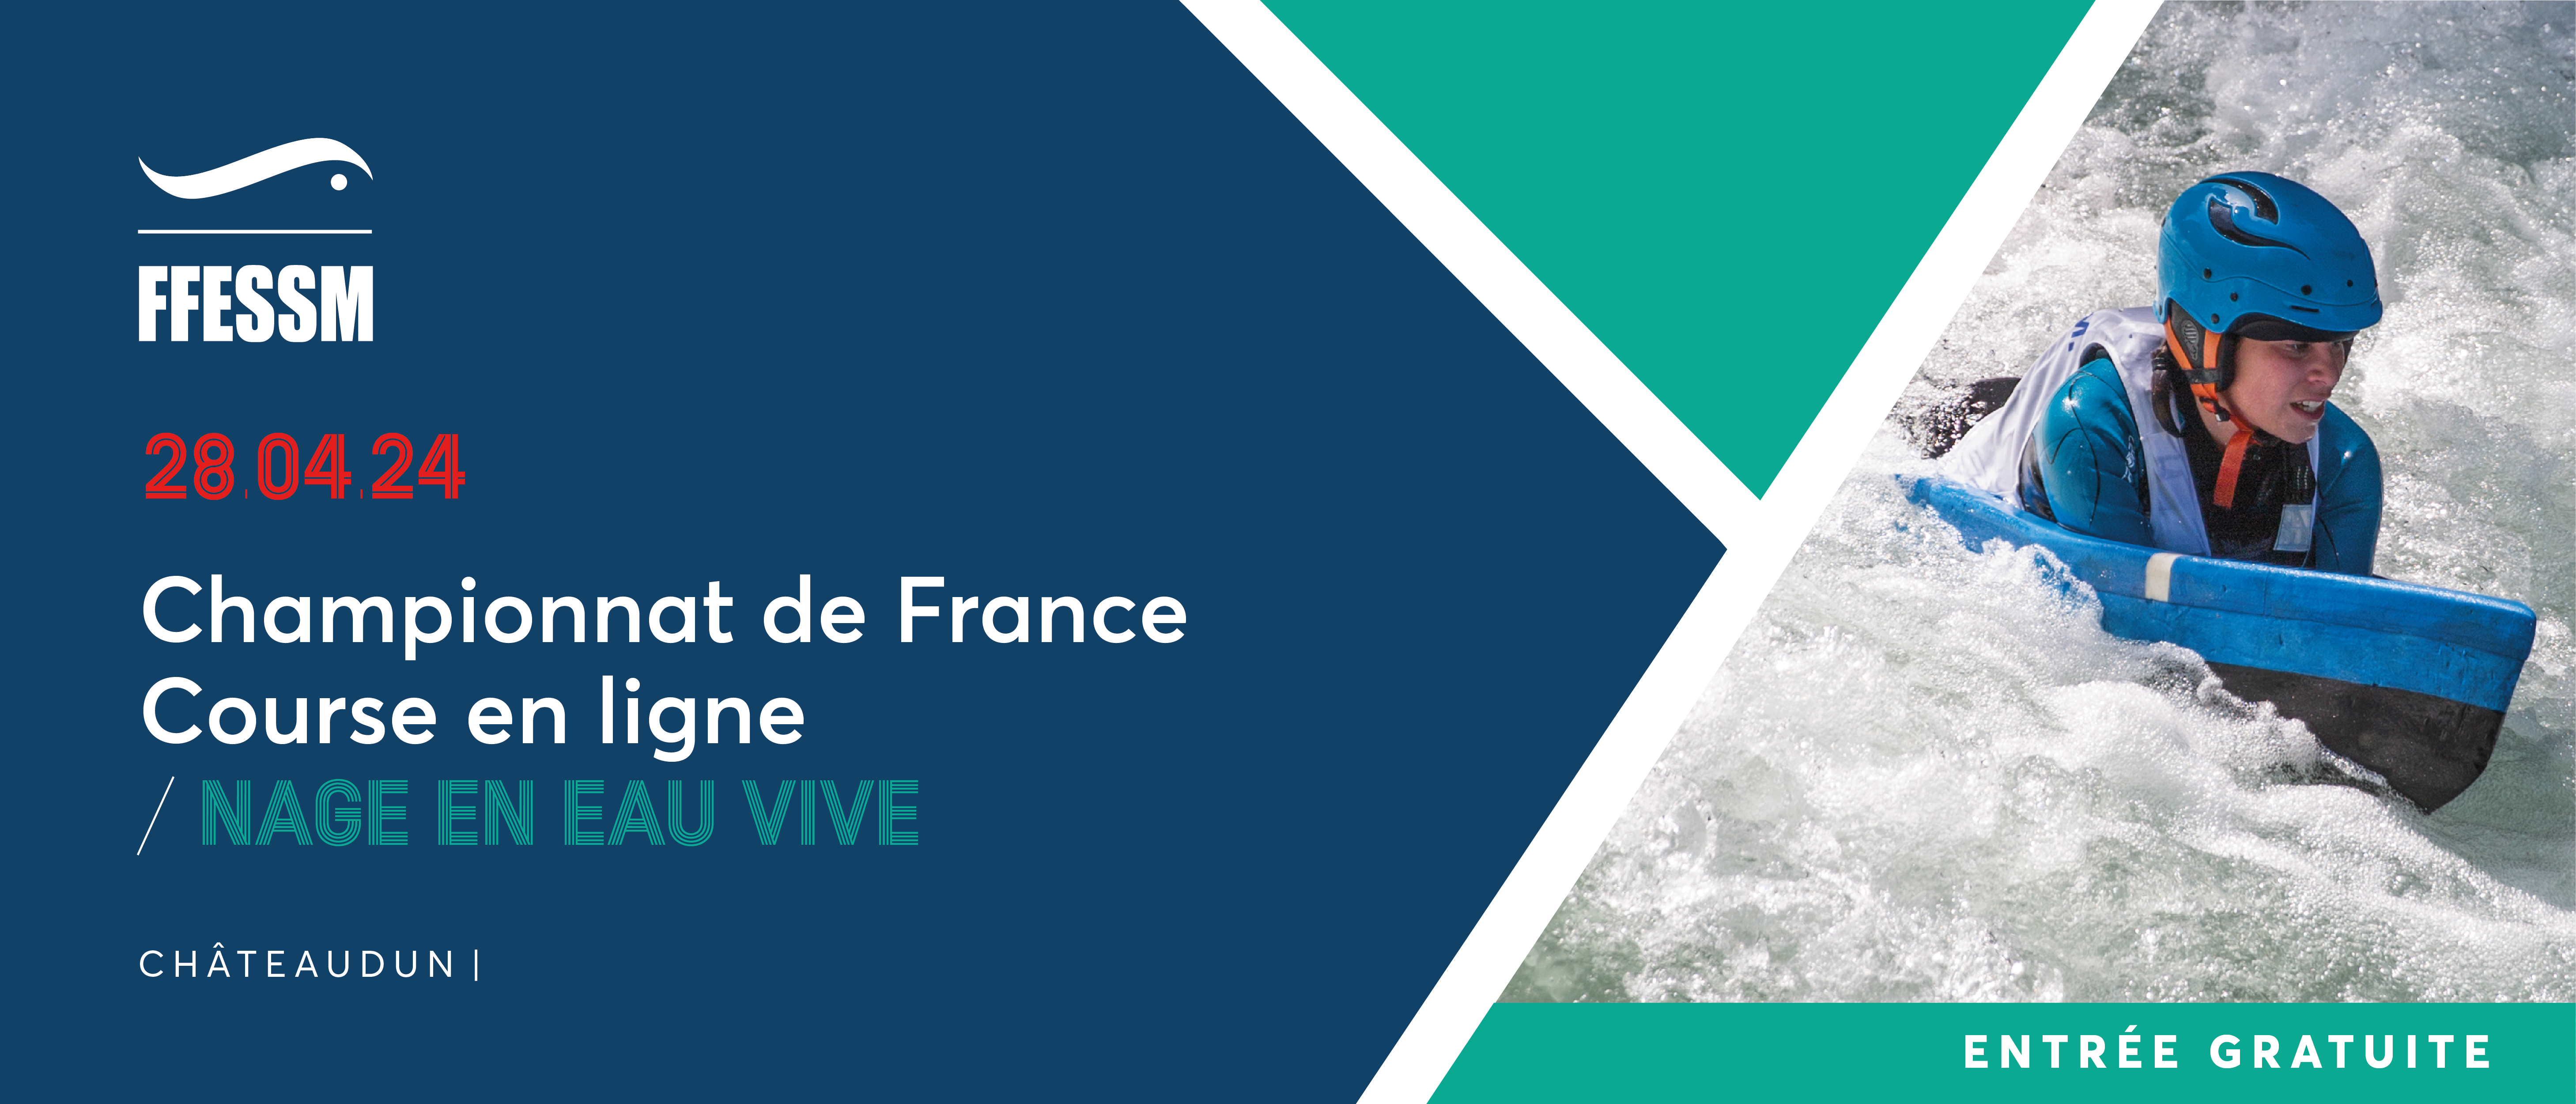 Nage en eau vive - Championnat de France de course en ligne